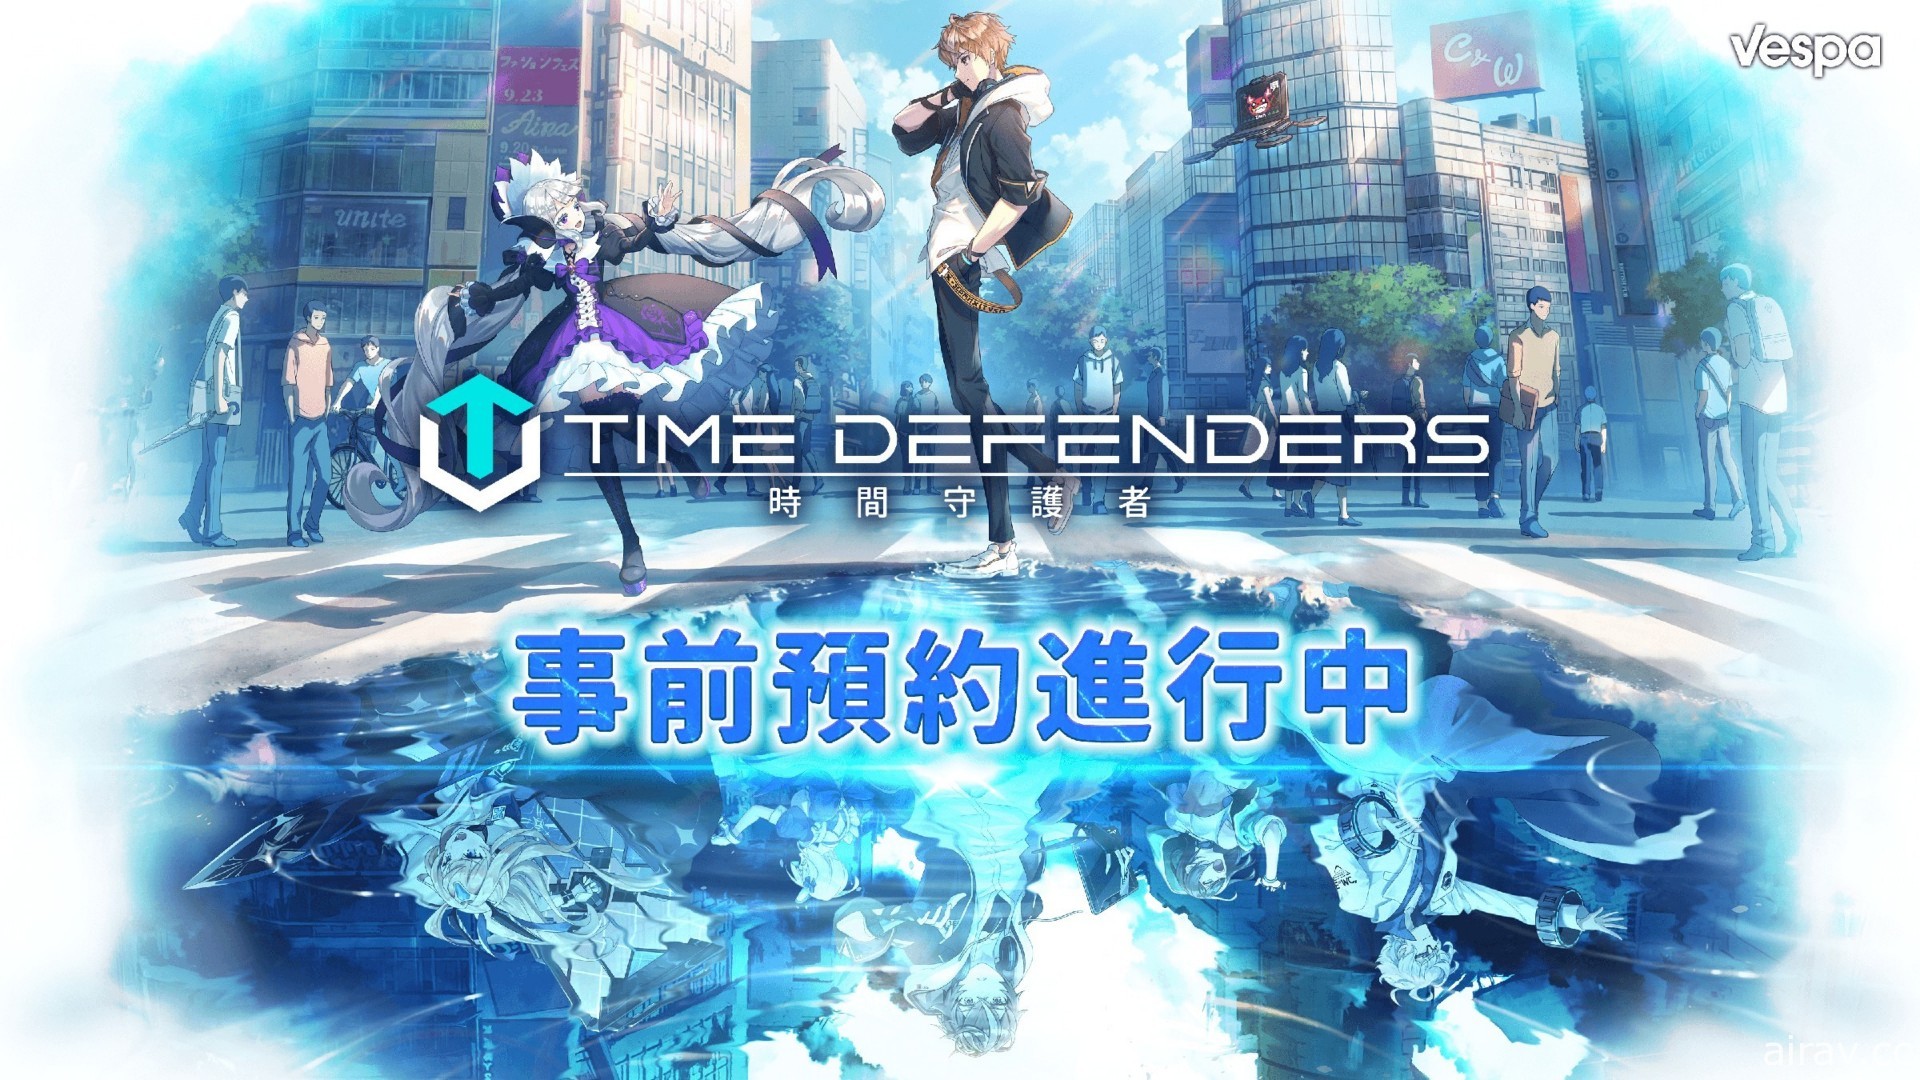 未来型塔防 RPG《TIME DEFENDERS - 时间守护者》繁中版即将上线 事前预约活动开跑